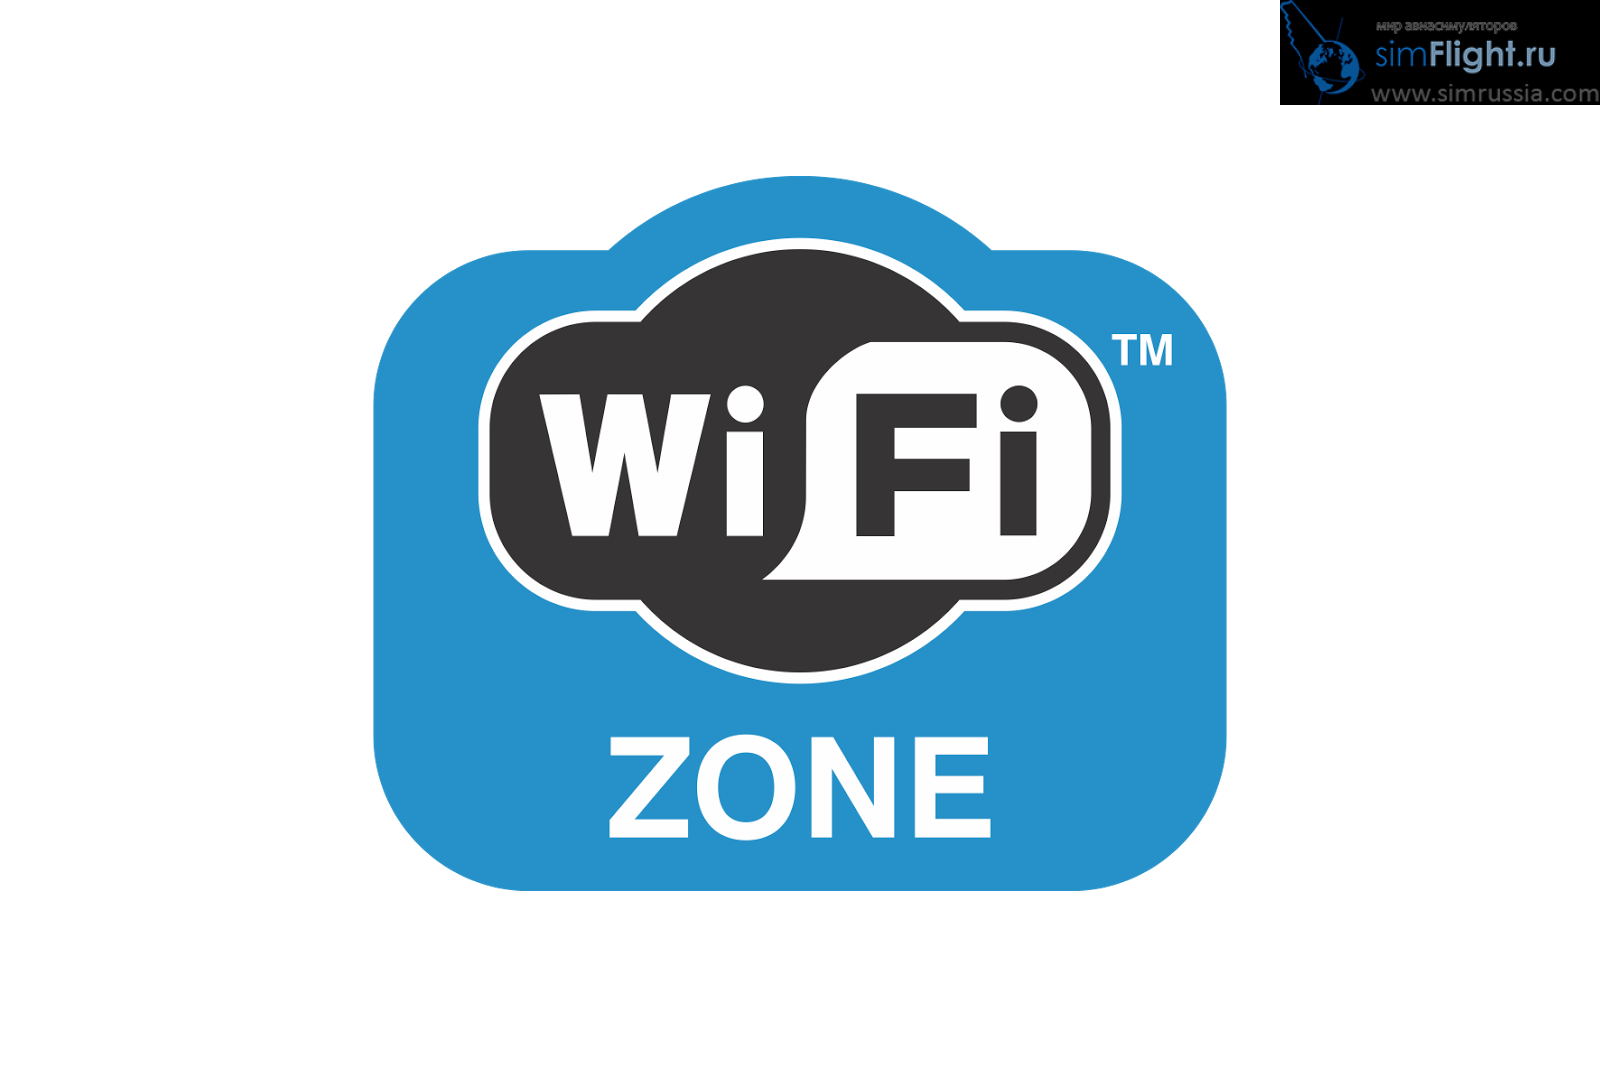 Wi fi. Бесплатный WIFI. Free Wi Fi Zone. WIFI Zone реклама.